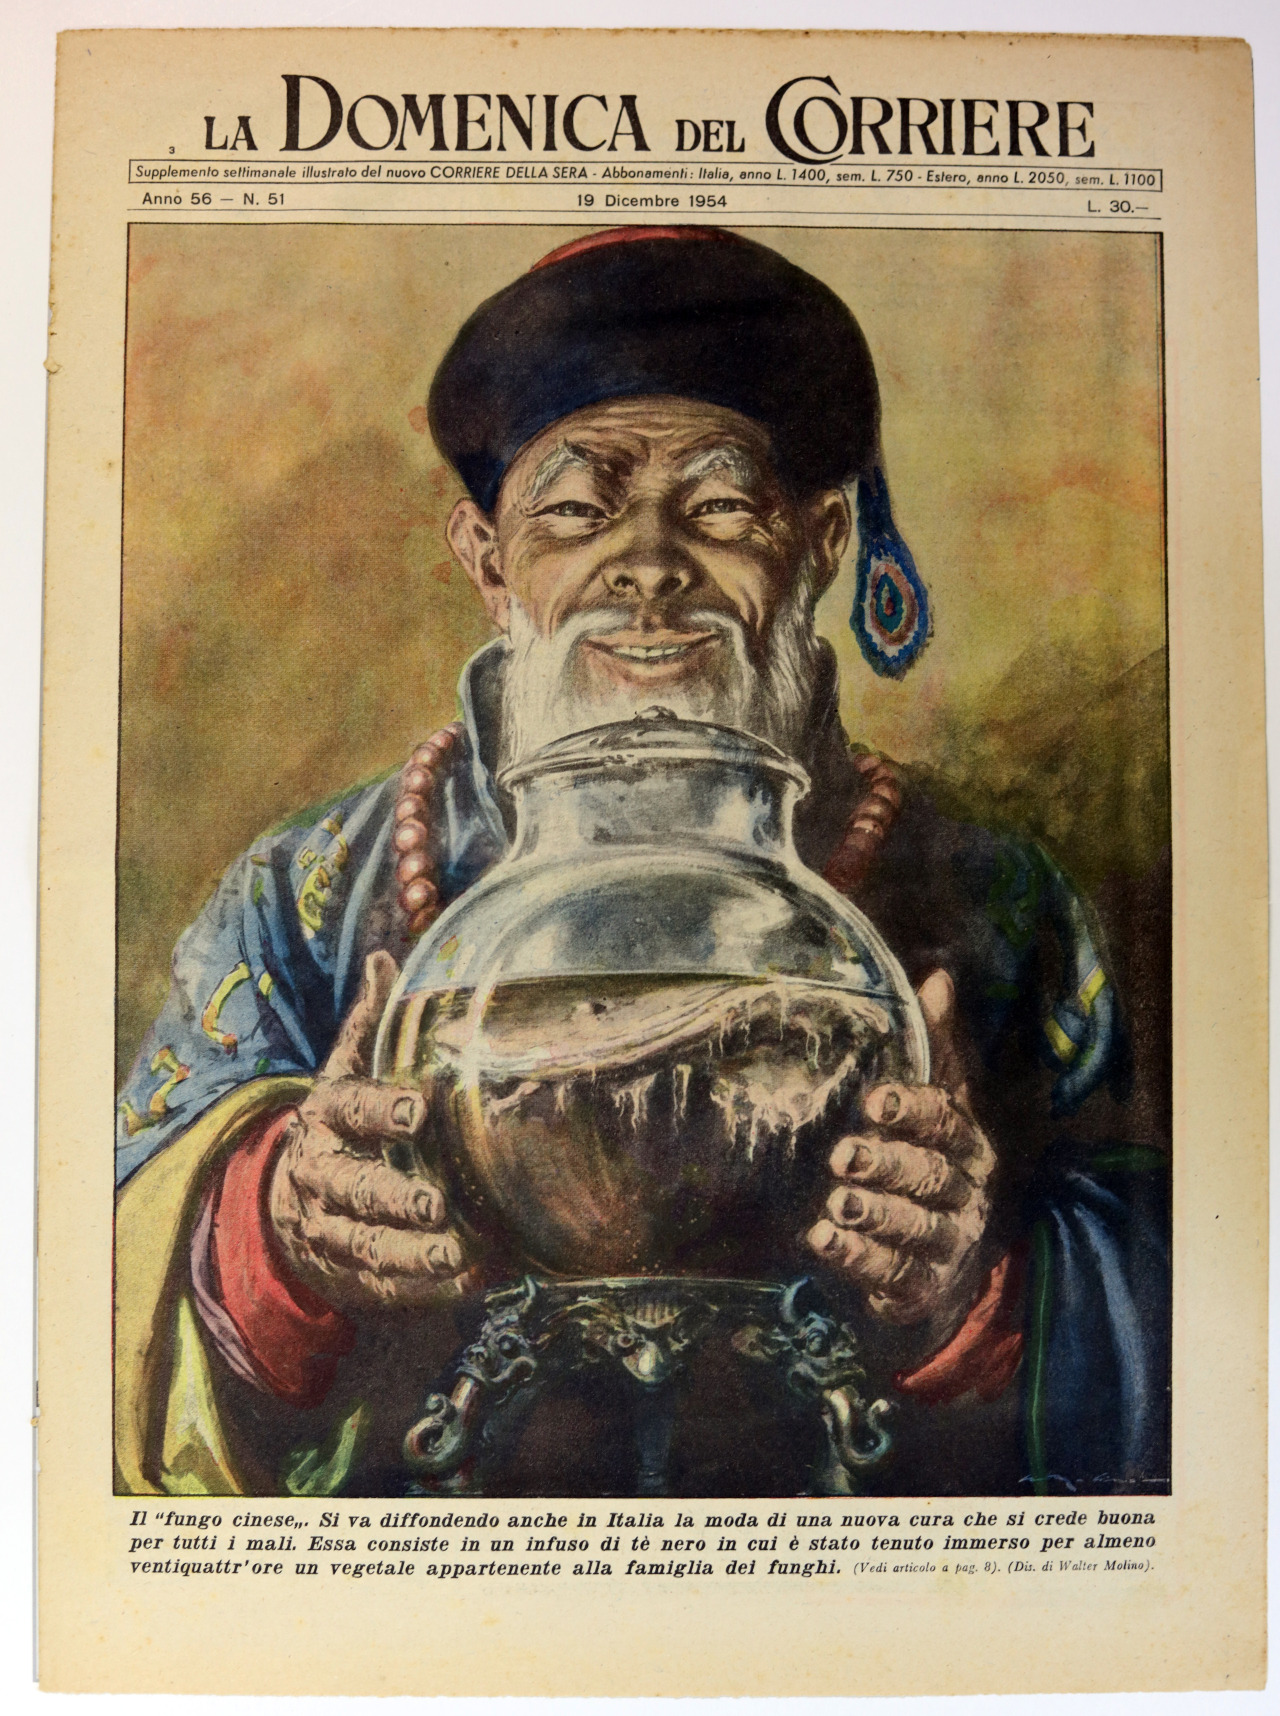 Fungo cinese; kombucha; 19 Dicembre 1954: la “Domenica del Corriere”